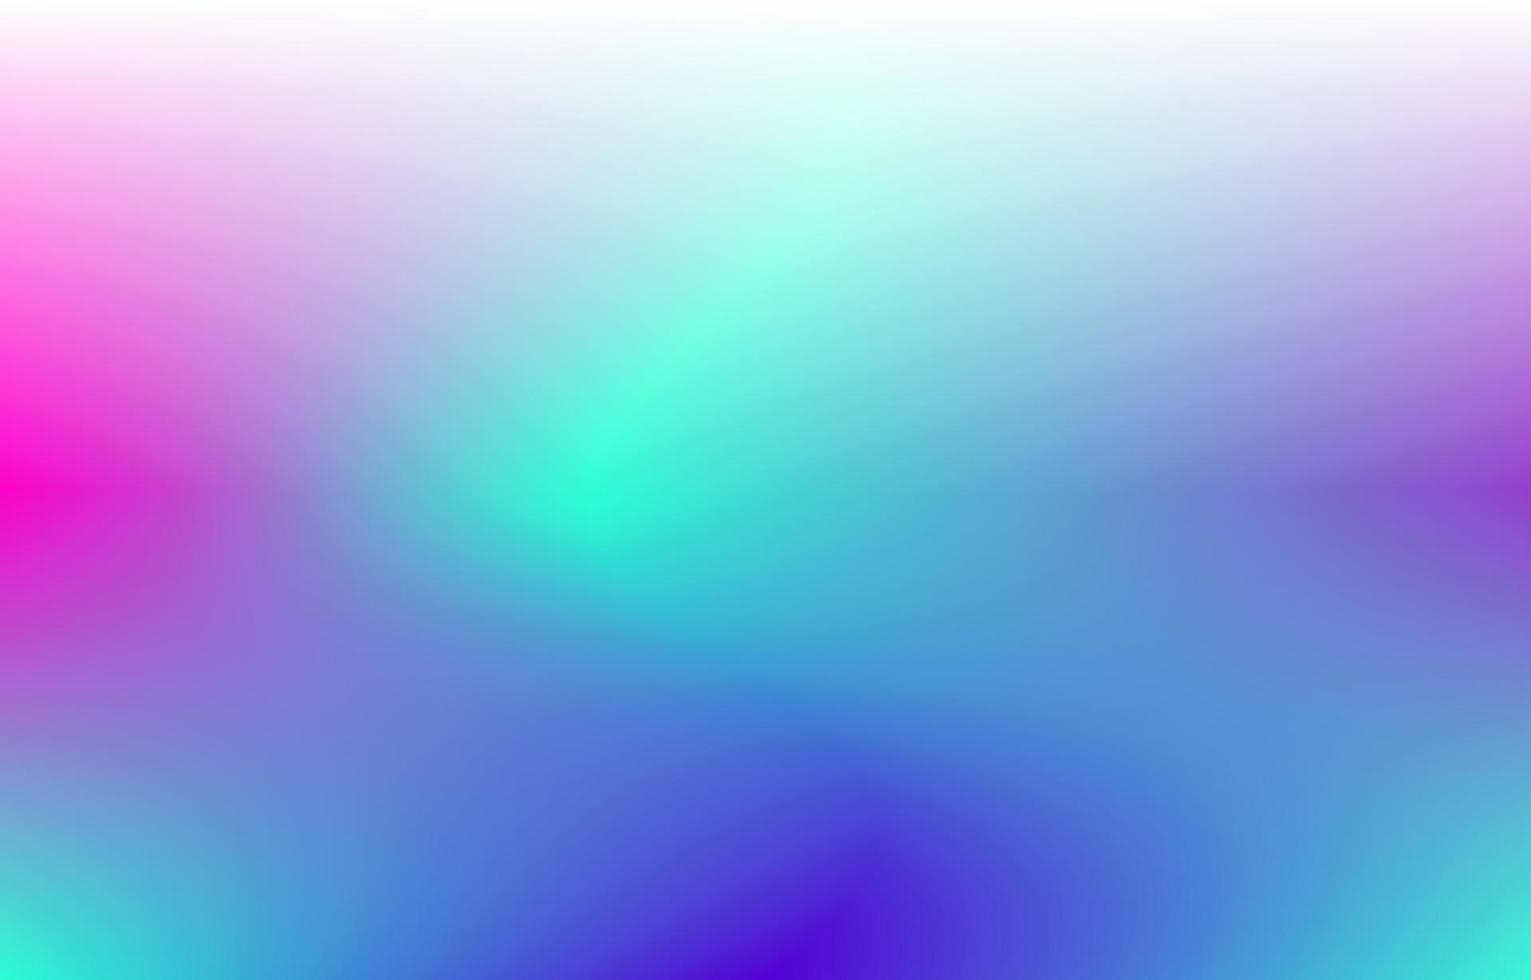 fundo fluido gradiente com cor verde, azul e rosa. ilustração em vetor gradiente suave. adequado para pôster, web design, banner e outros.